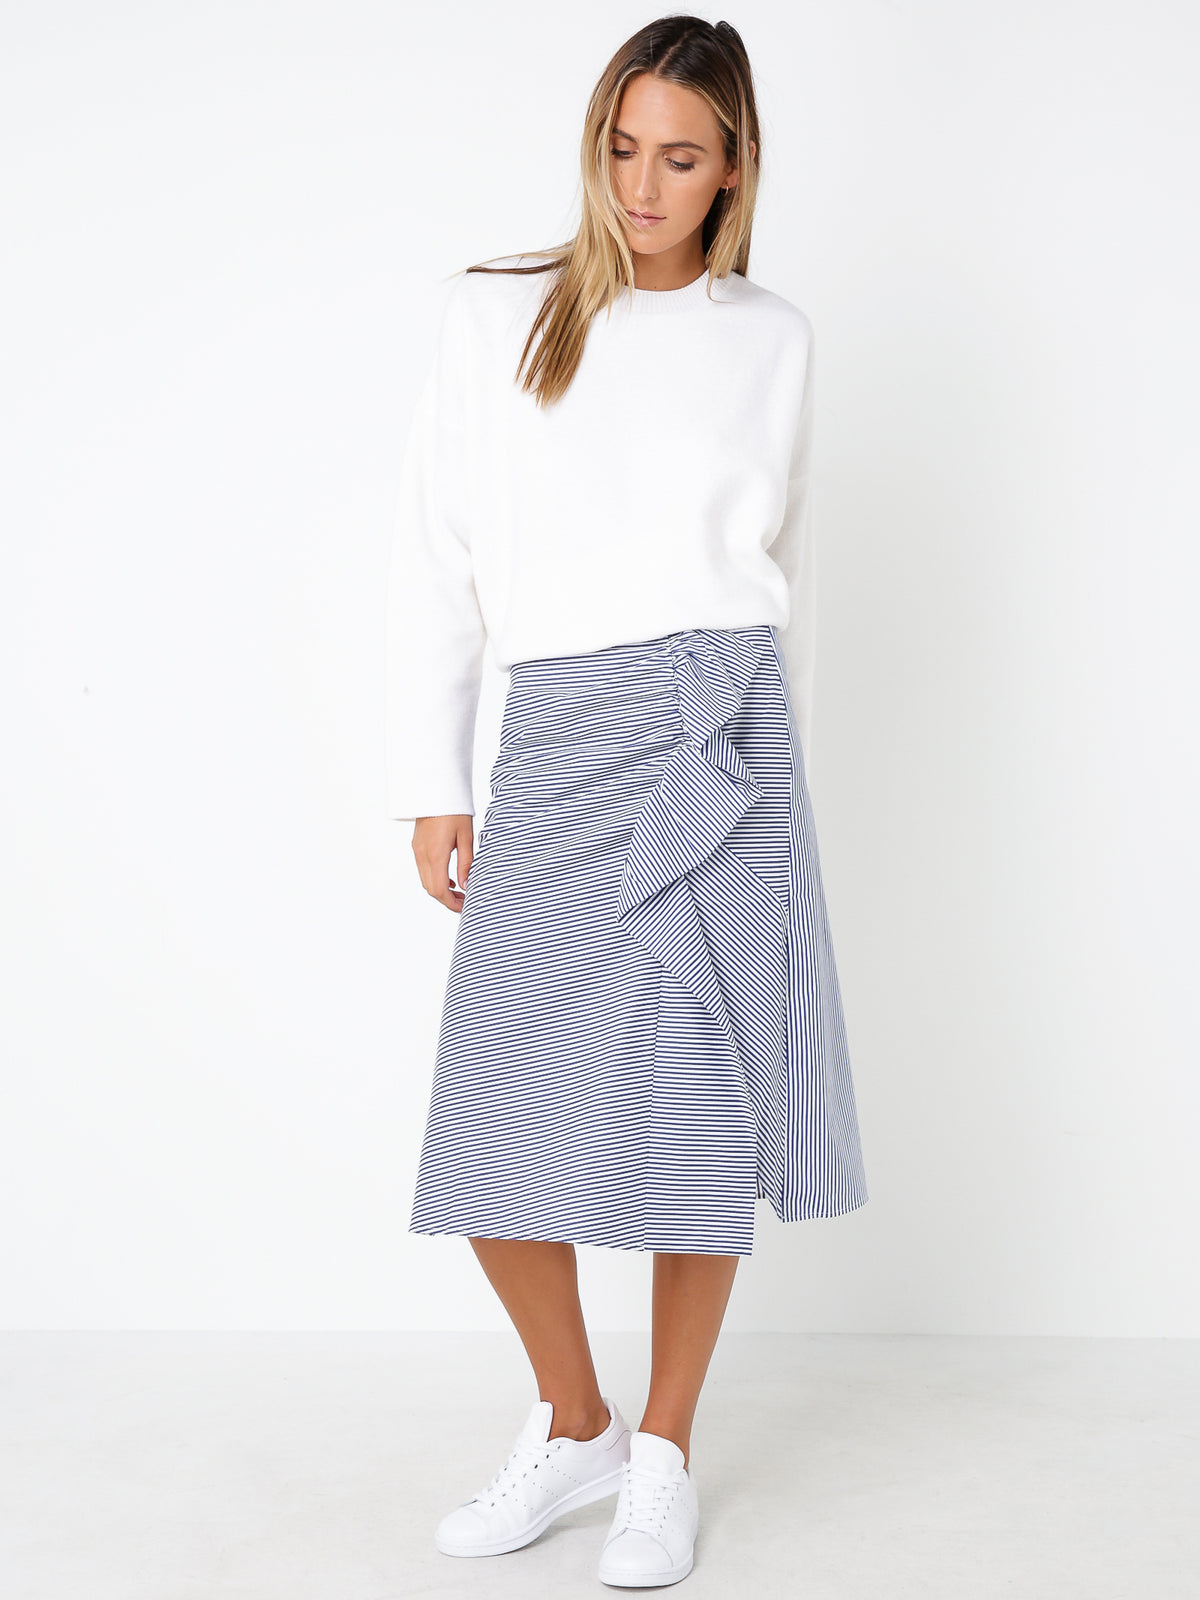 Larsson Skirt in White &amp; Blue Stripe